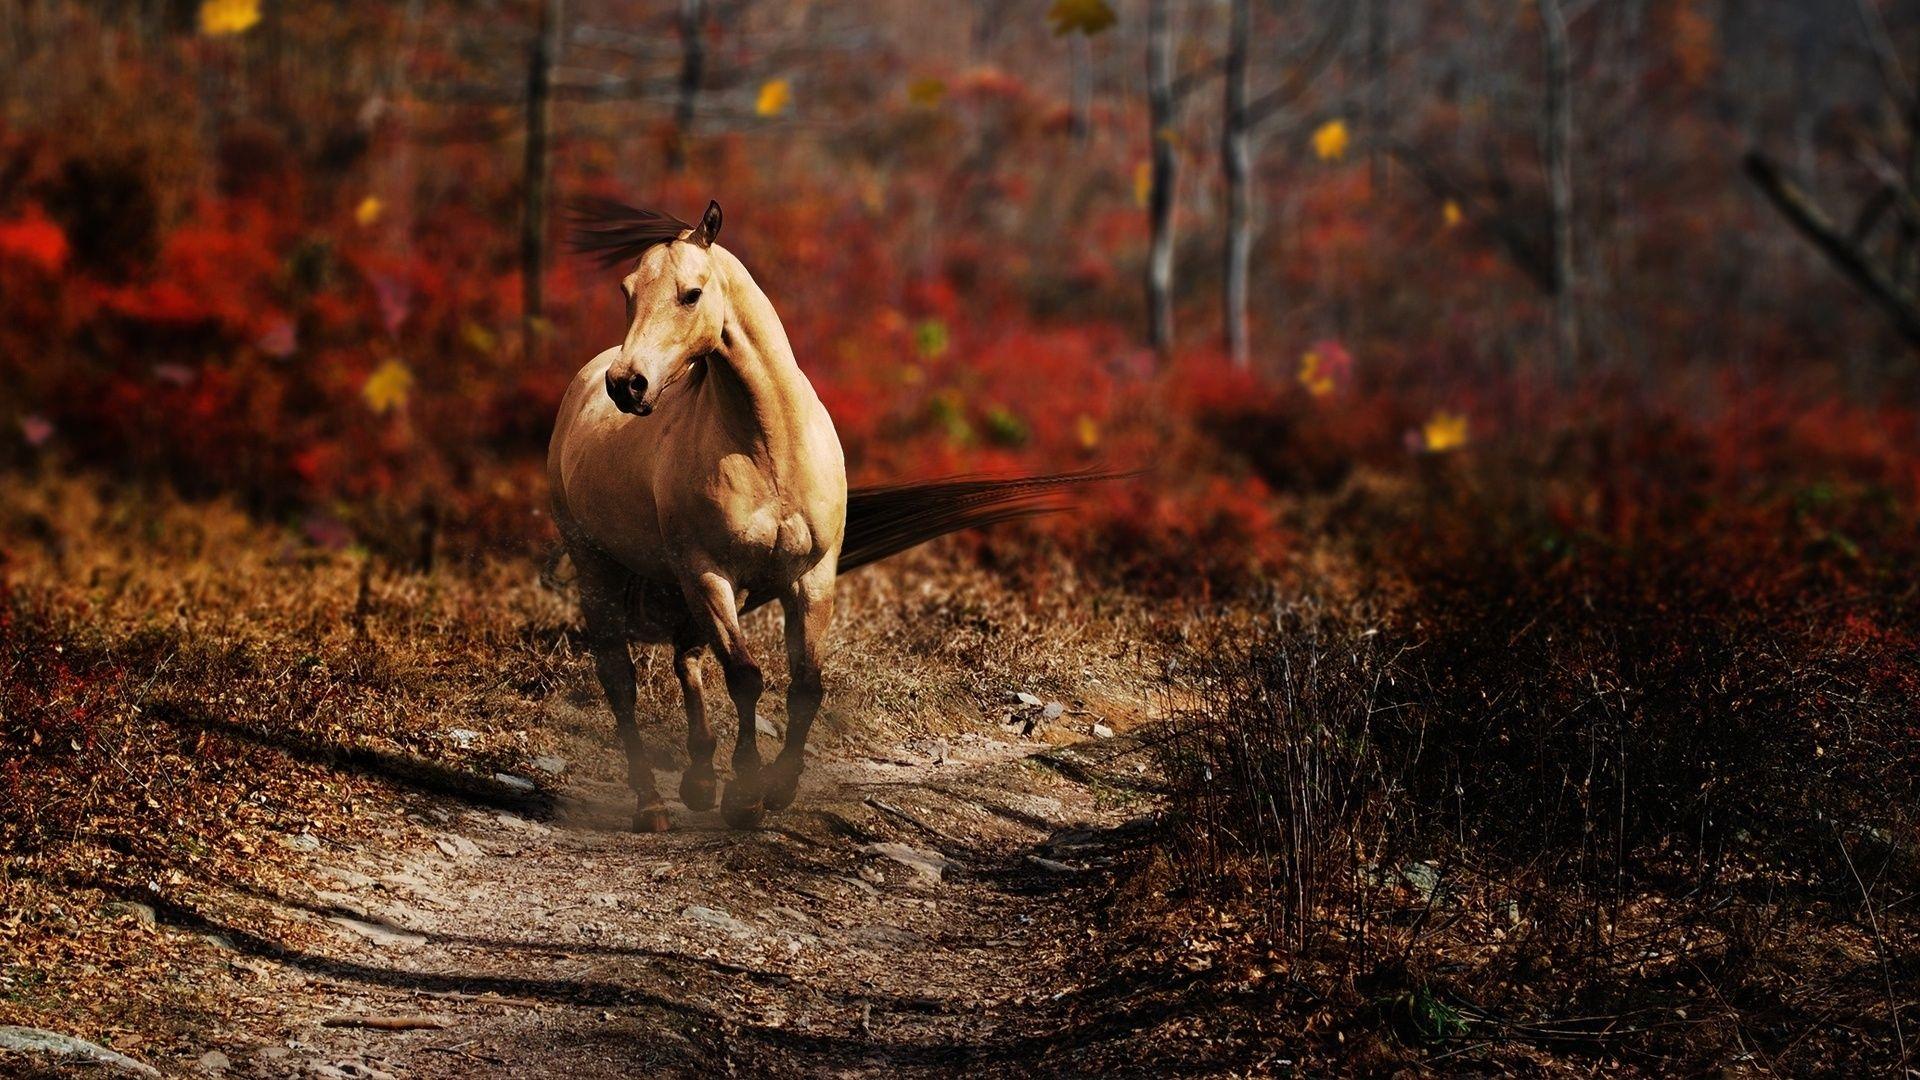 beauty. Horses ♥♥♥ my love. Running horses